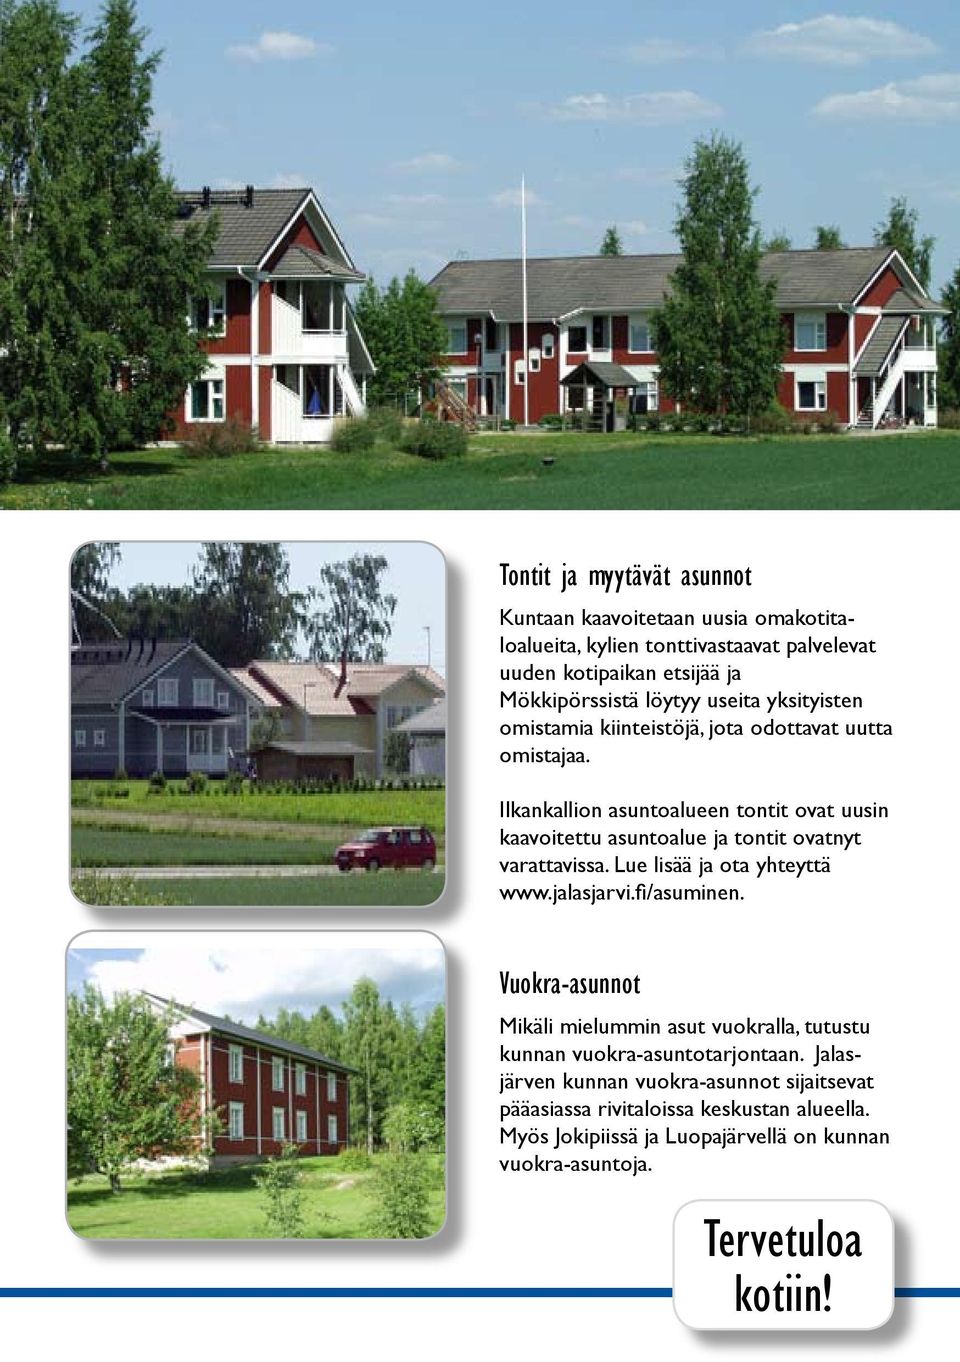 Ilkankallion asuntoalueen tontit ovat uusin kaavoitettu asuntoalue ja tontit ovatnyt varattavissa. Lue lisää ja ota yhteyttä www.jalasjarvi.fi/asuminen.